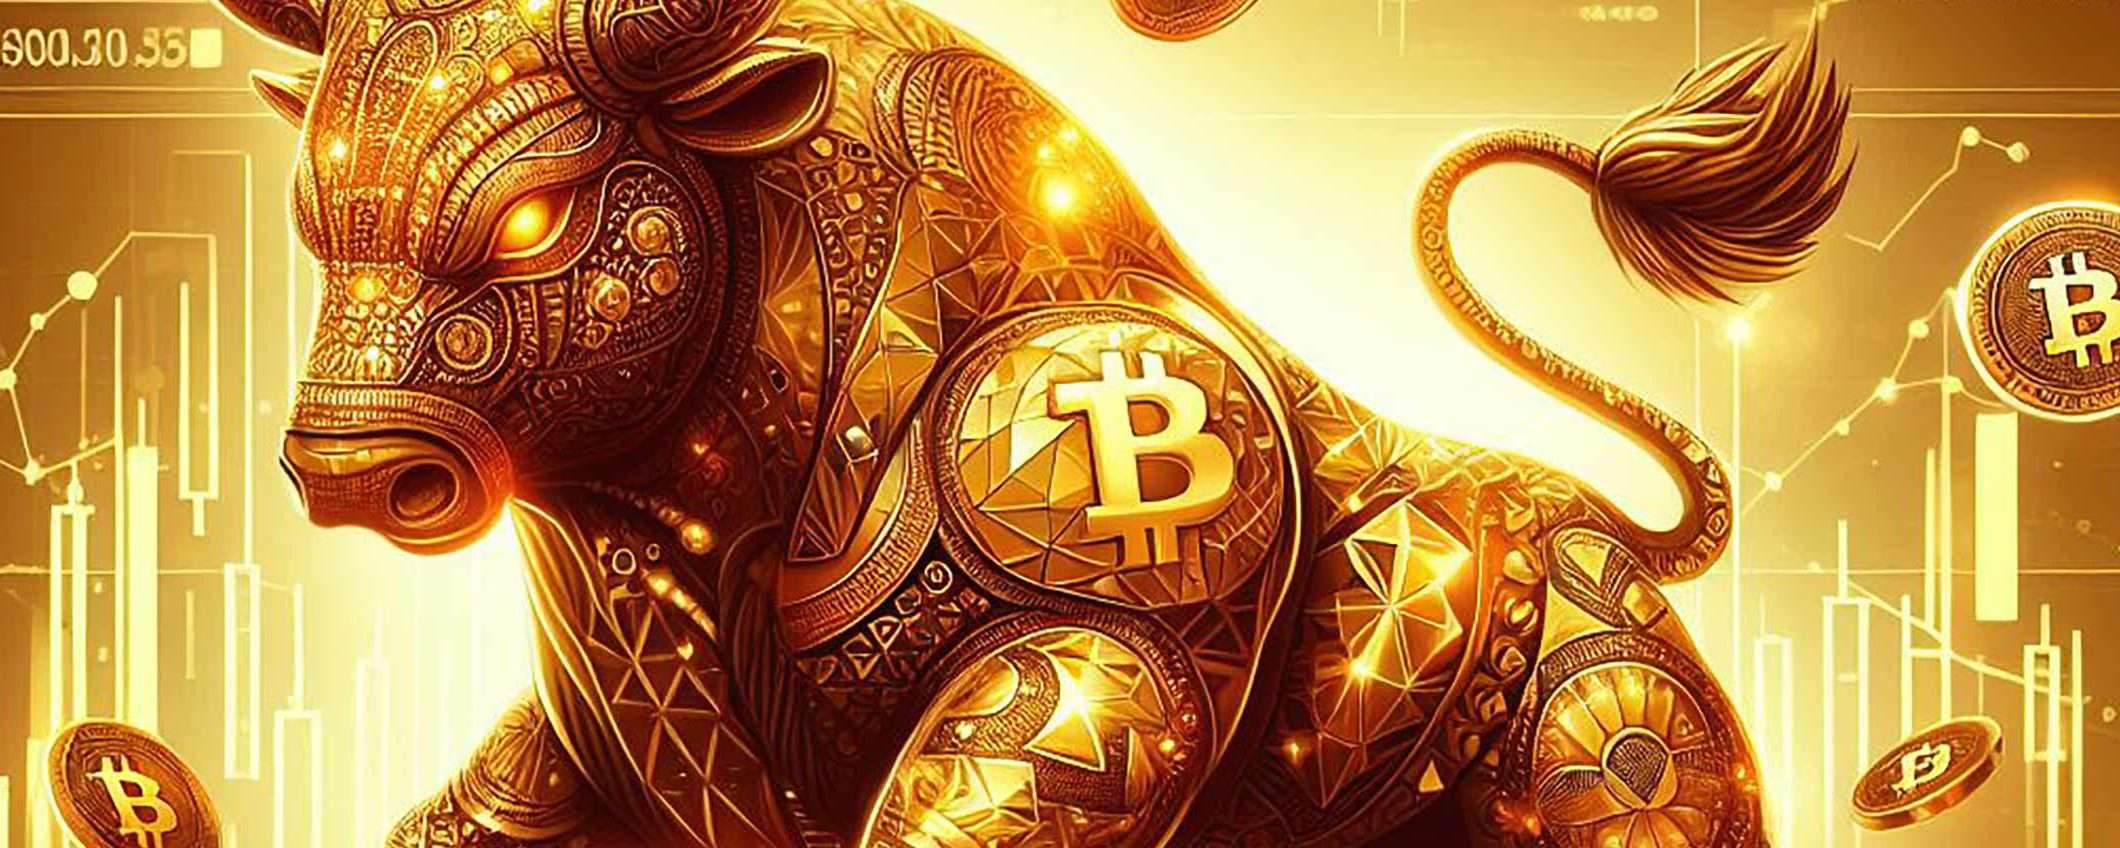 Bitcoin e cripto, è un momento d'oro: scegli eToro